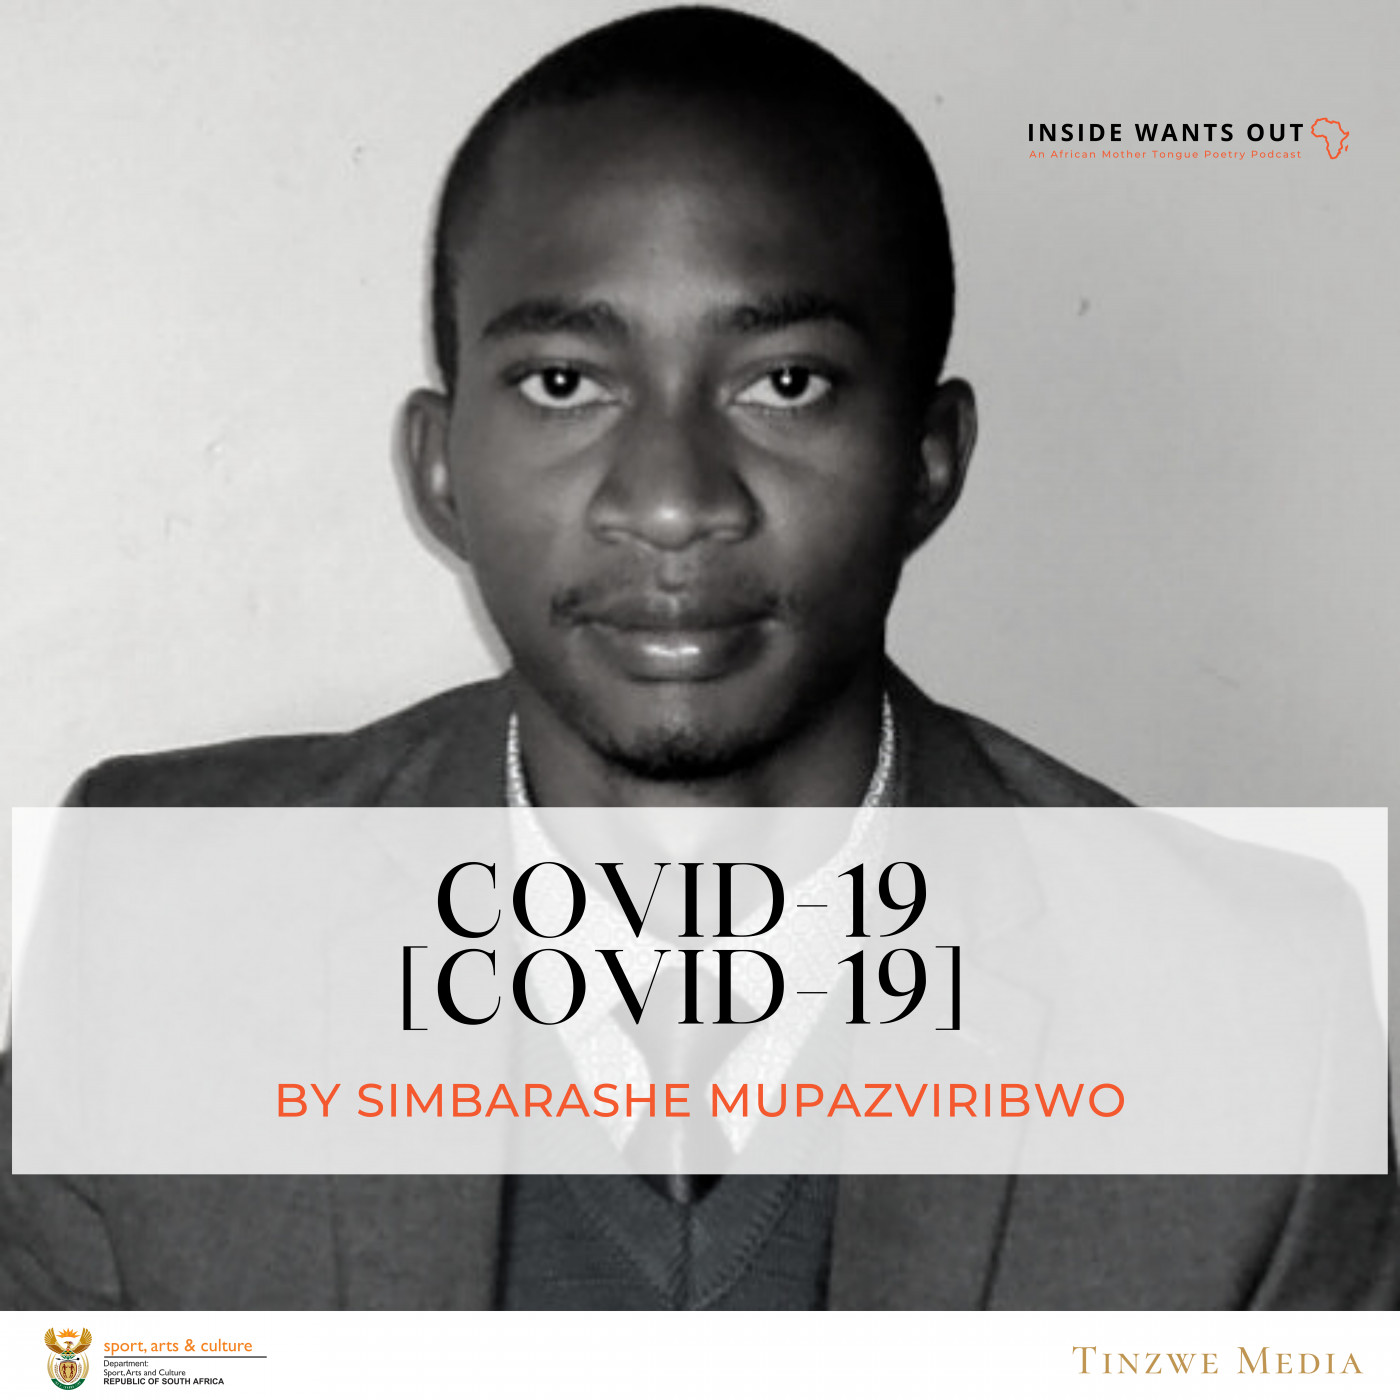 COVID-19 by Simbarashe Mupazviribwo | Ep 4